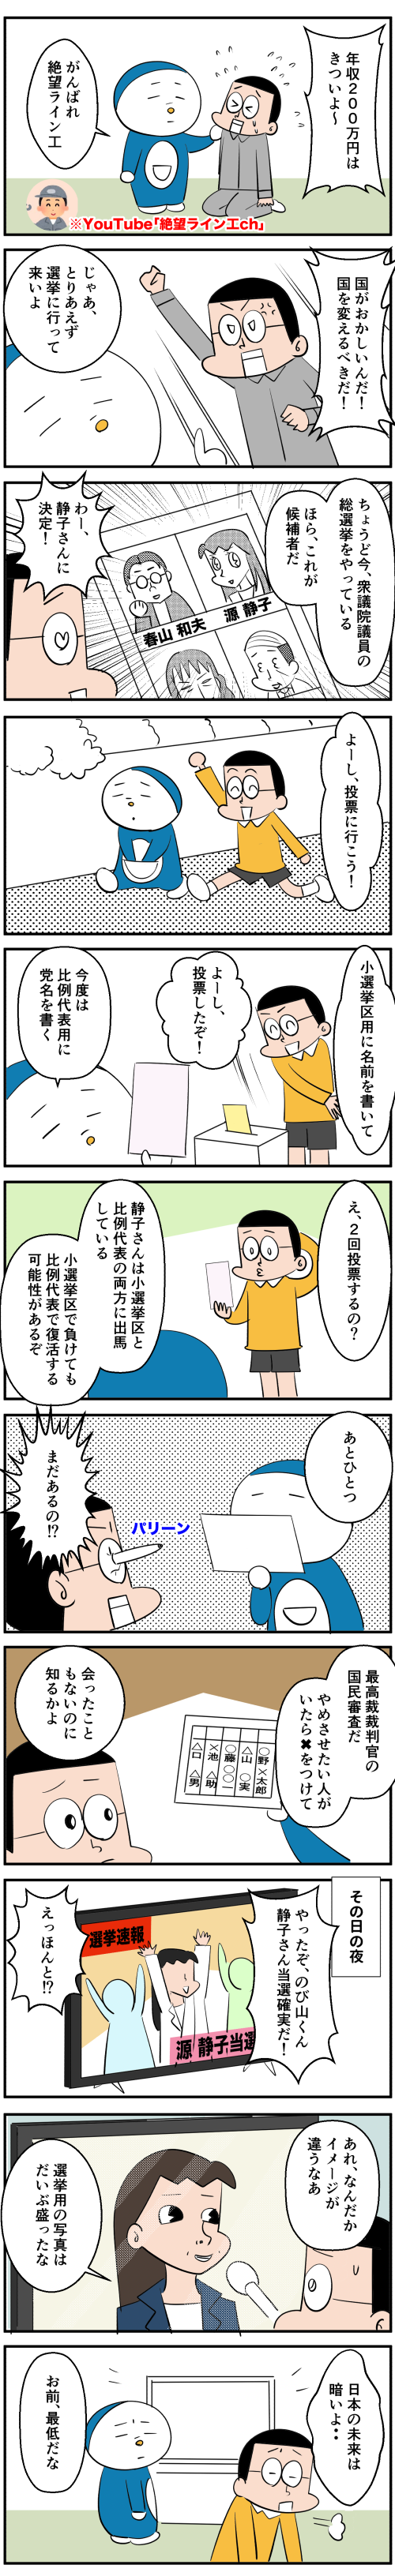 日本の選挙に関する漫画